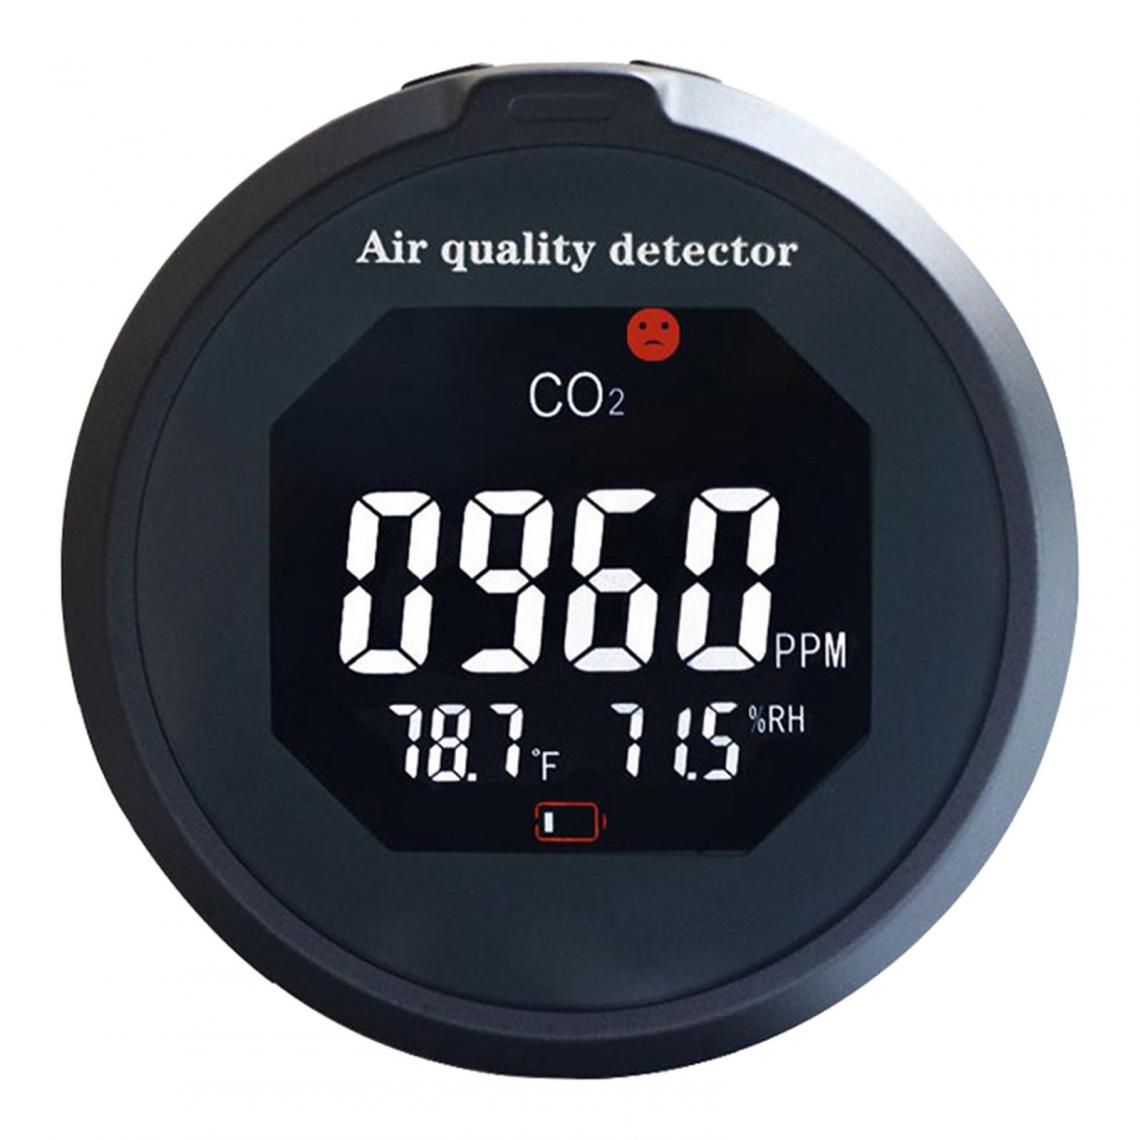 marque generique - Moniteur de CO2 Moniteur intelligent de qualité de l'air intérieur - Détecteur connecté